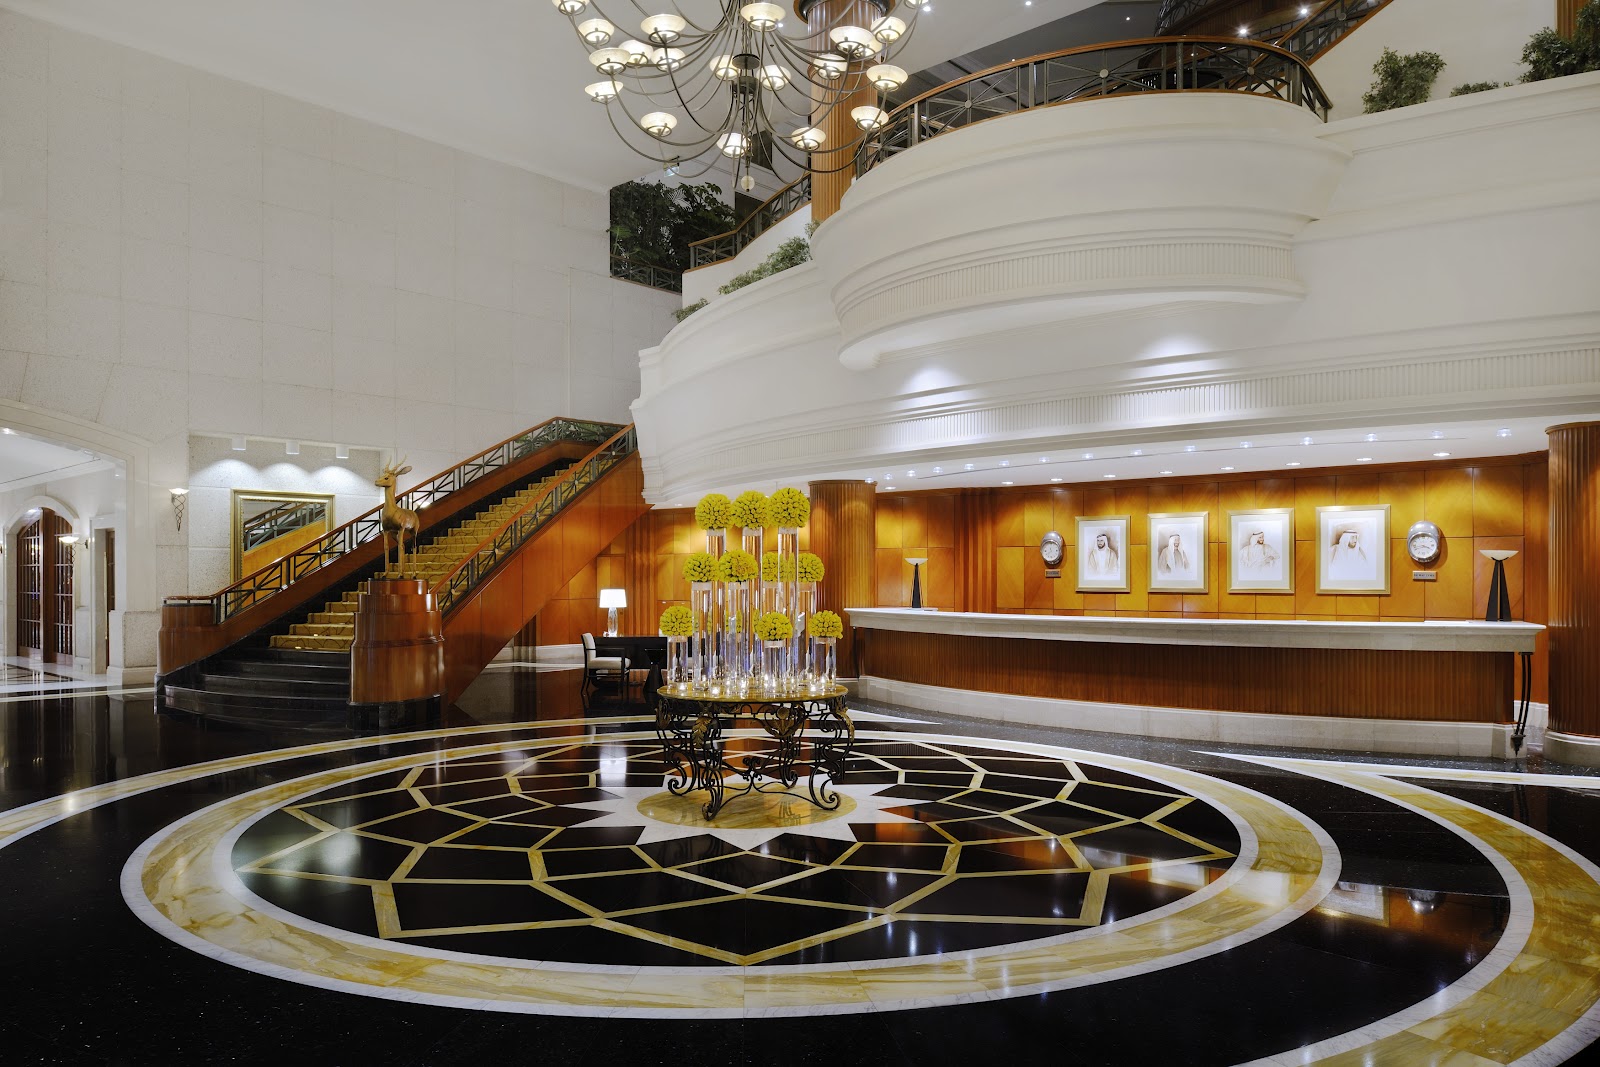 فنادق دبي تواجه تراجعاً كبيراً في تدفق سياح أوروبا وروسيا